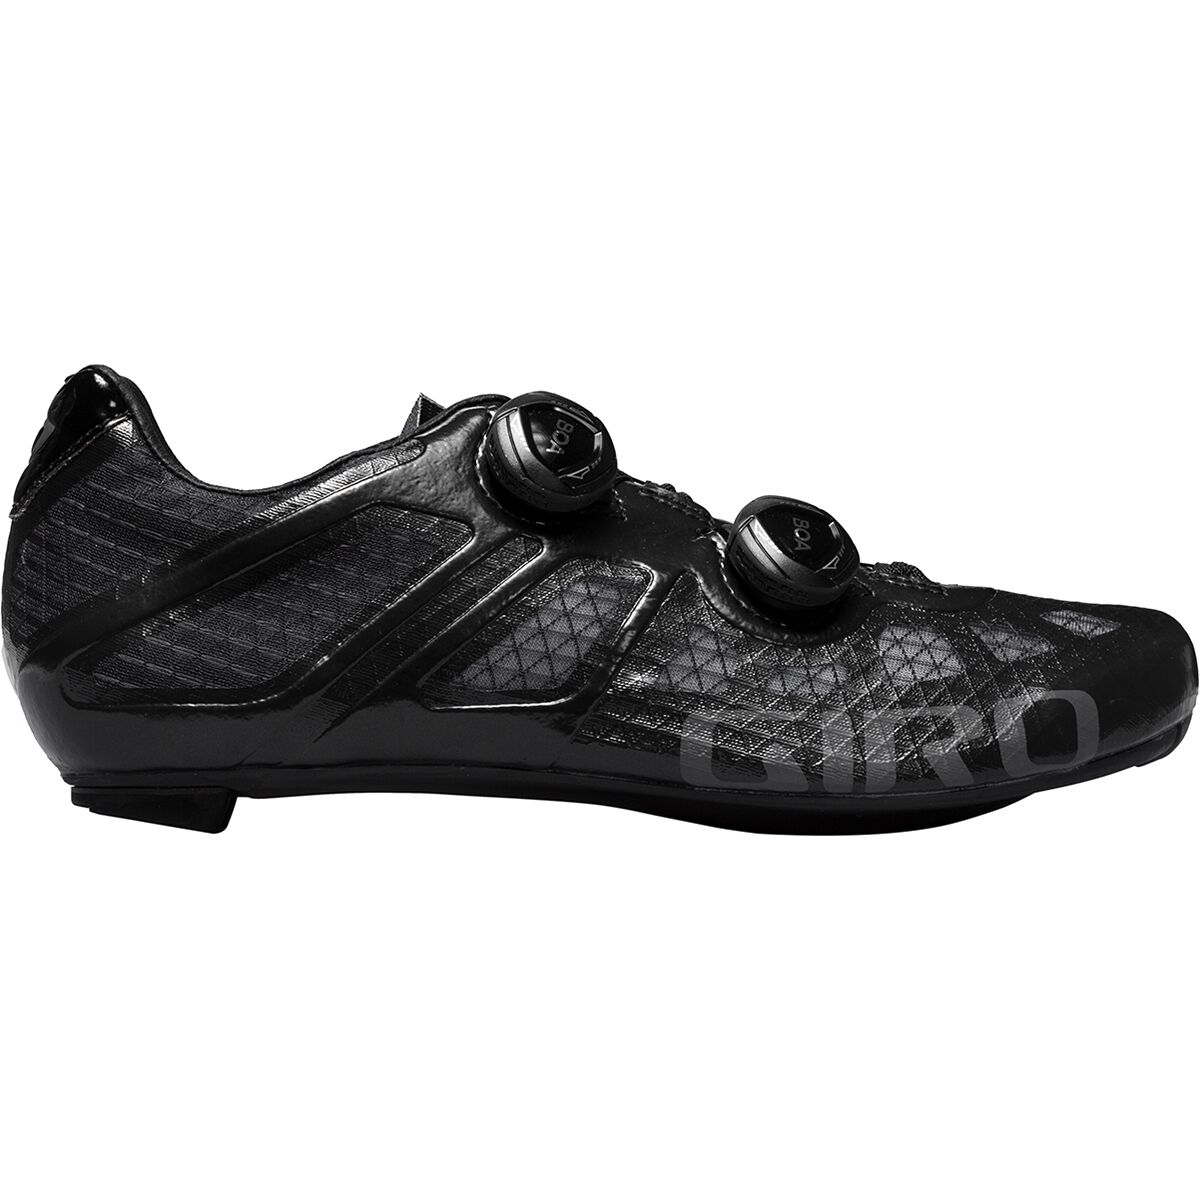 Review: Giro Republic R Knit Road Cycling Shoes